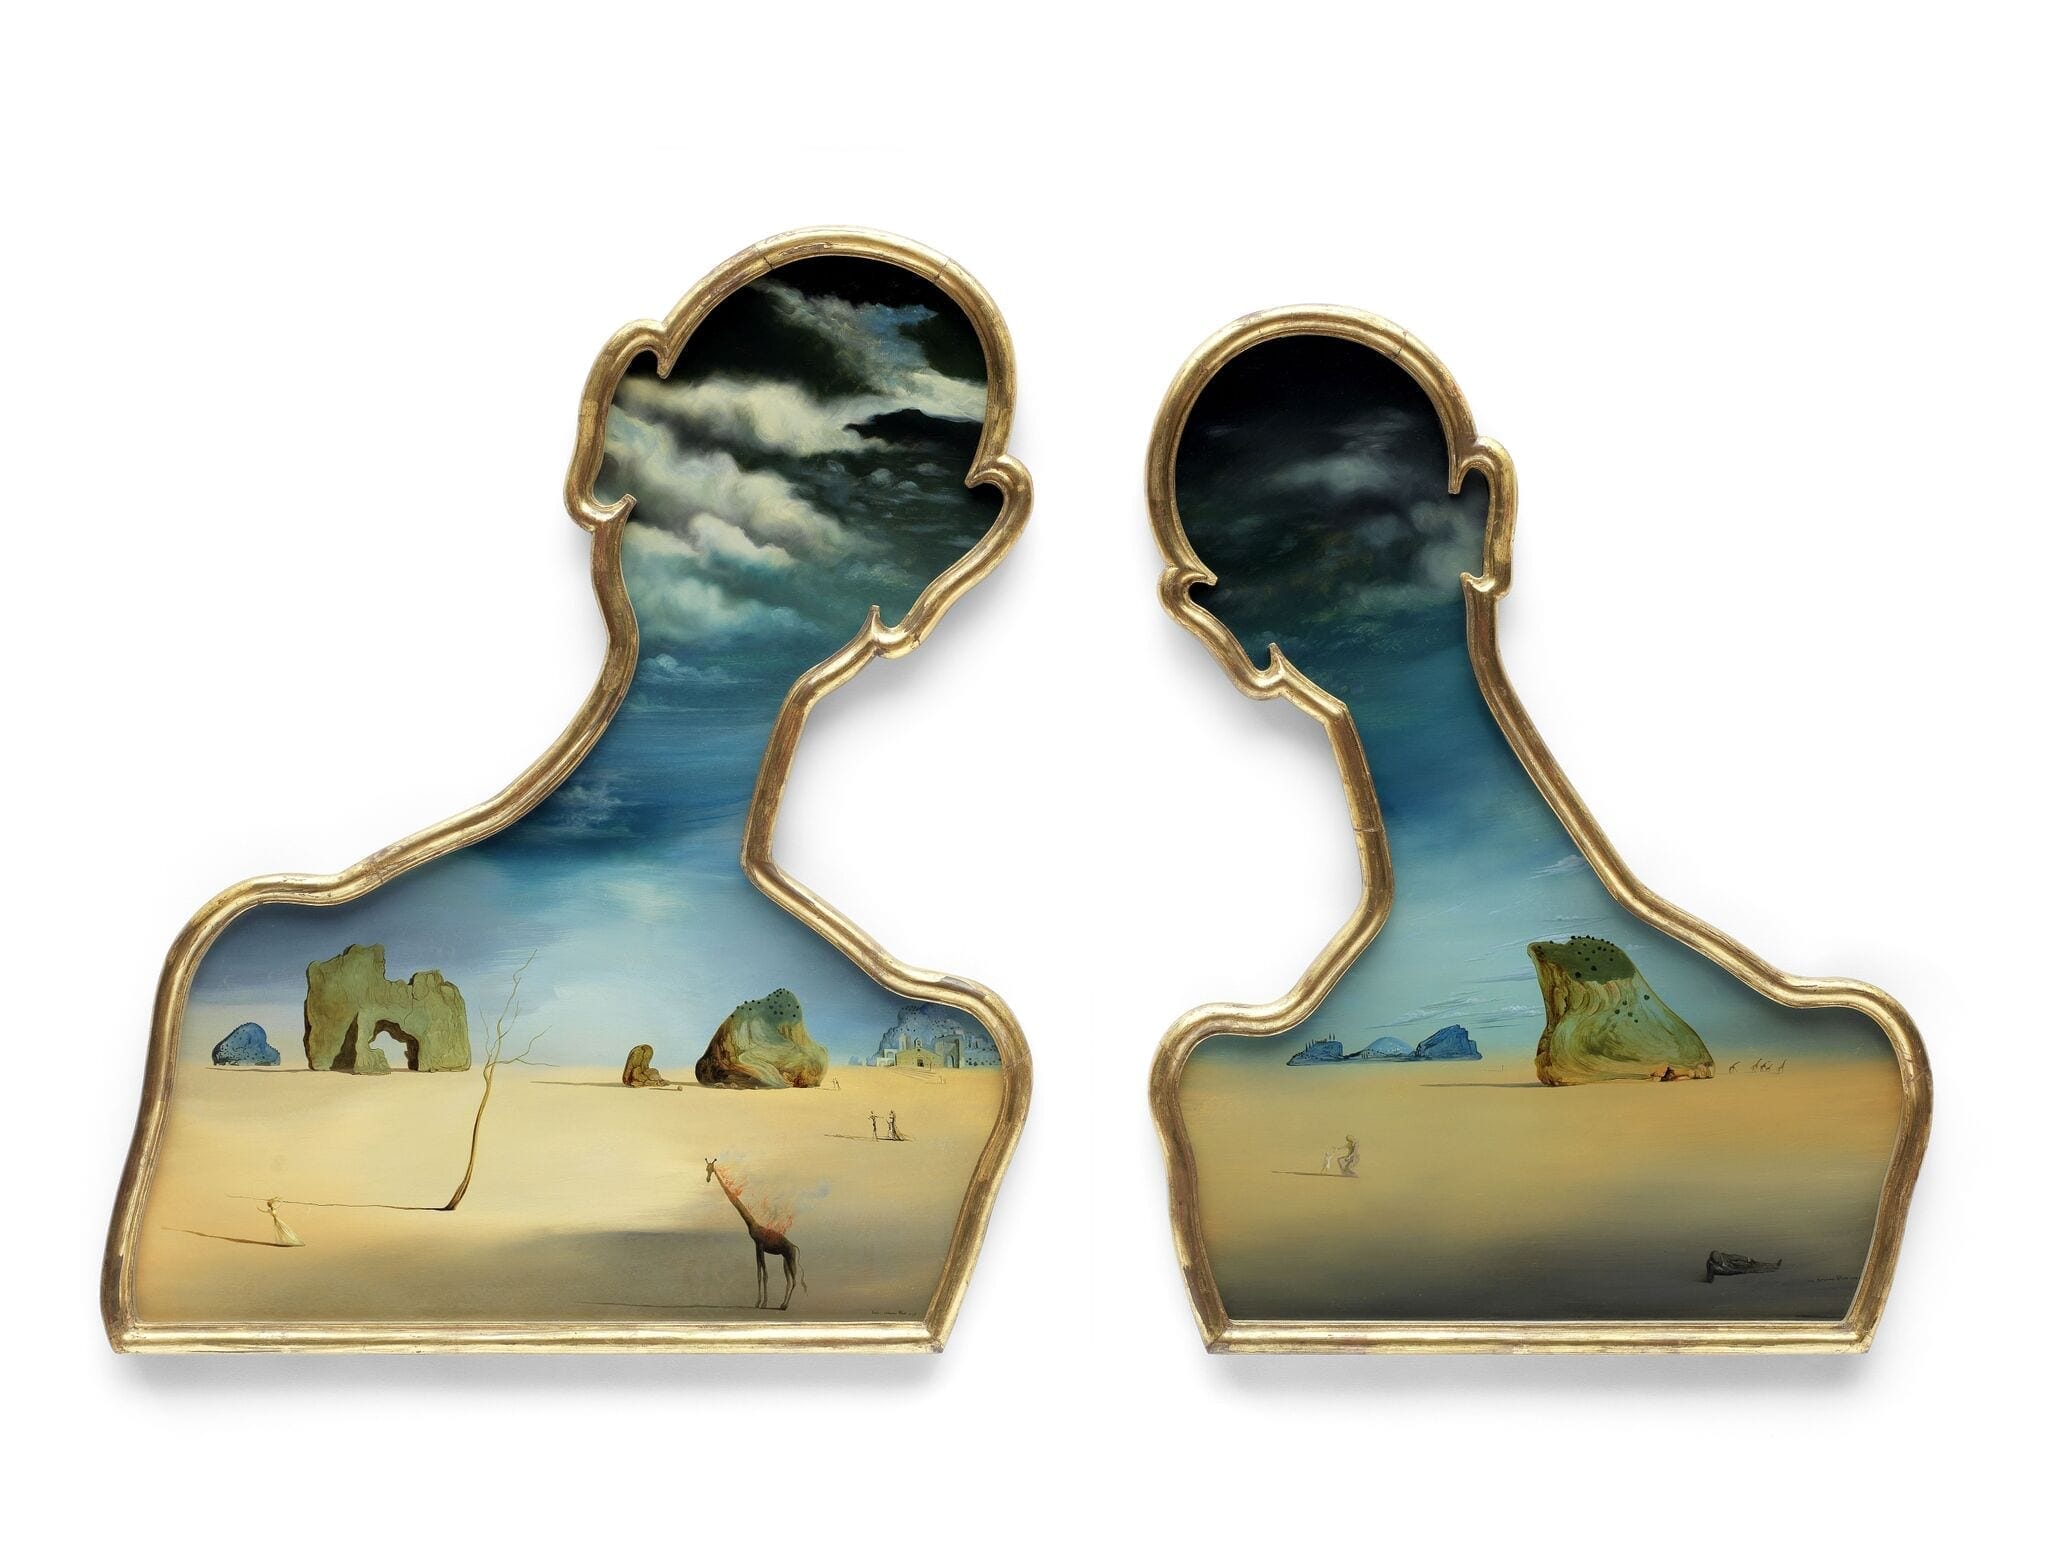 © Bonhams Salvador Dalí (1904-1989), Couple aux têtes pleines de nuages (1937) Estimación: £7,000,000 – 10,000,000. 92.5 x 72.5 cm (imagen a la izquierda) 90 x 70.5 cm (imagen a la derecha)